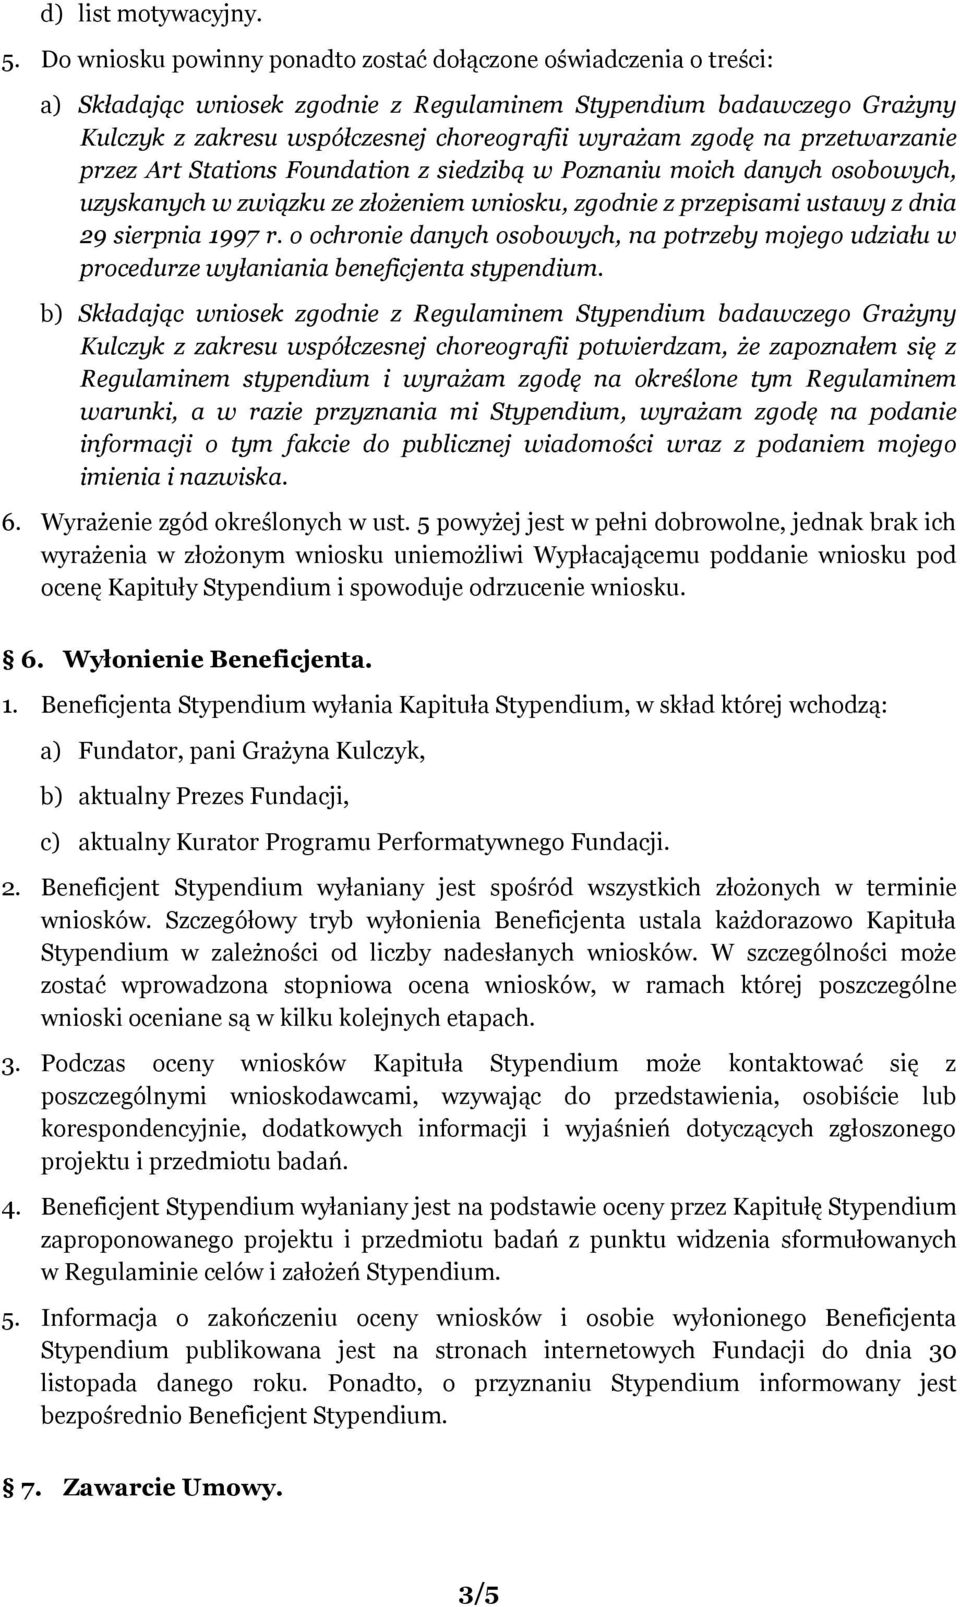 na przetwarzanie przez Art Stations Foundation z siedzibą w Poznaniu moich danych osobowych, uzyskanych w związku ze złożeniem wniosku, zgodnie z przepisami ustawy z dnia 29 sierpnia 1997 r.